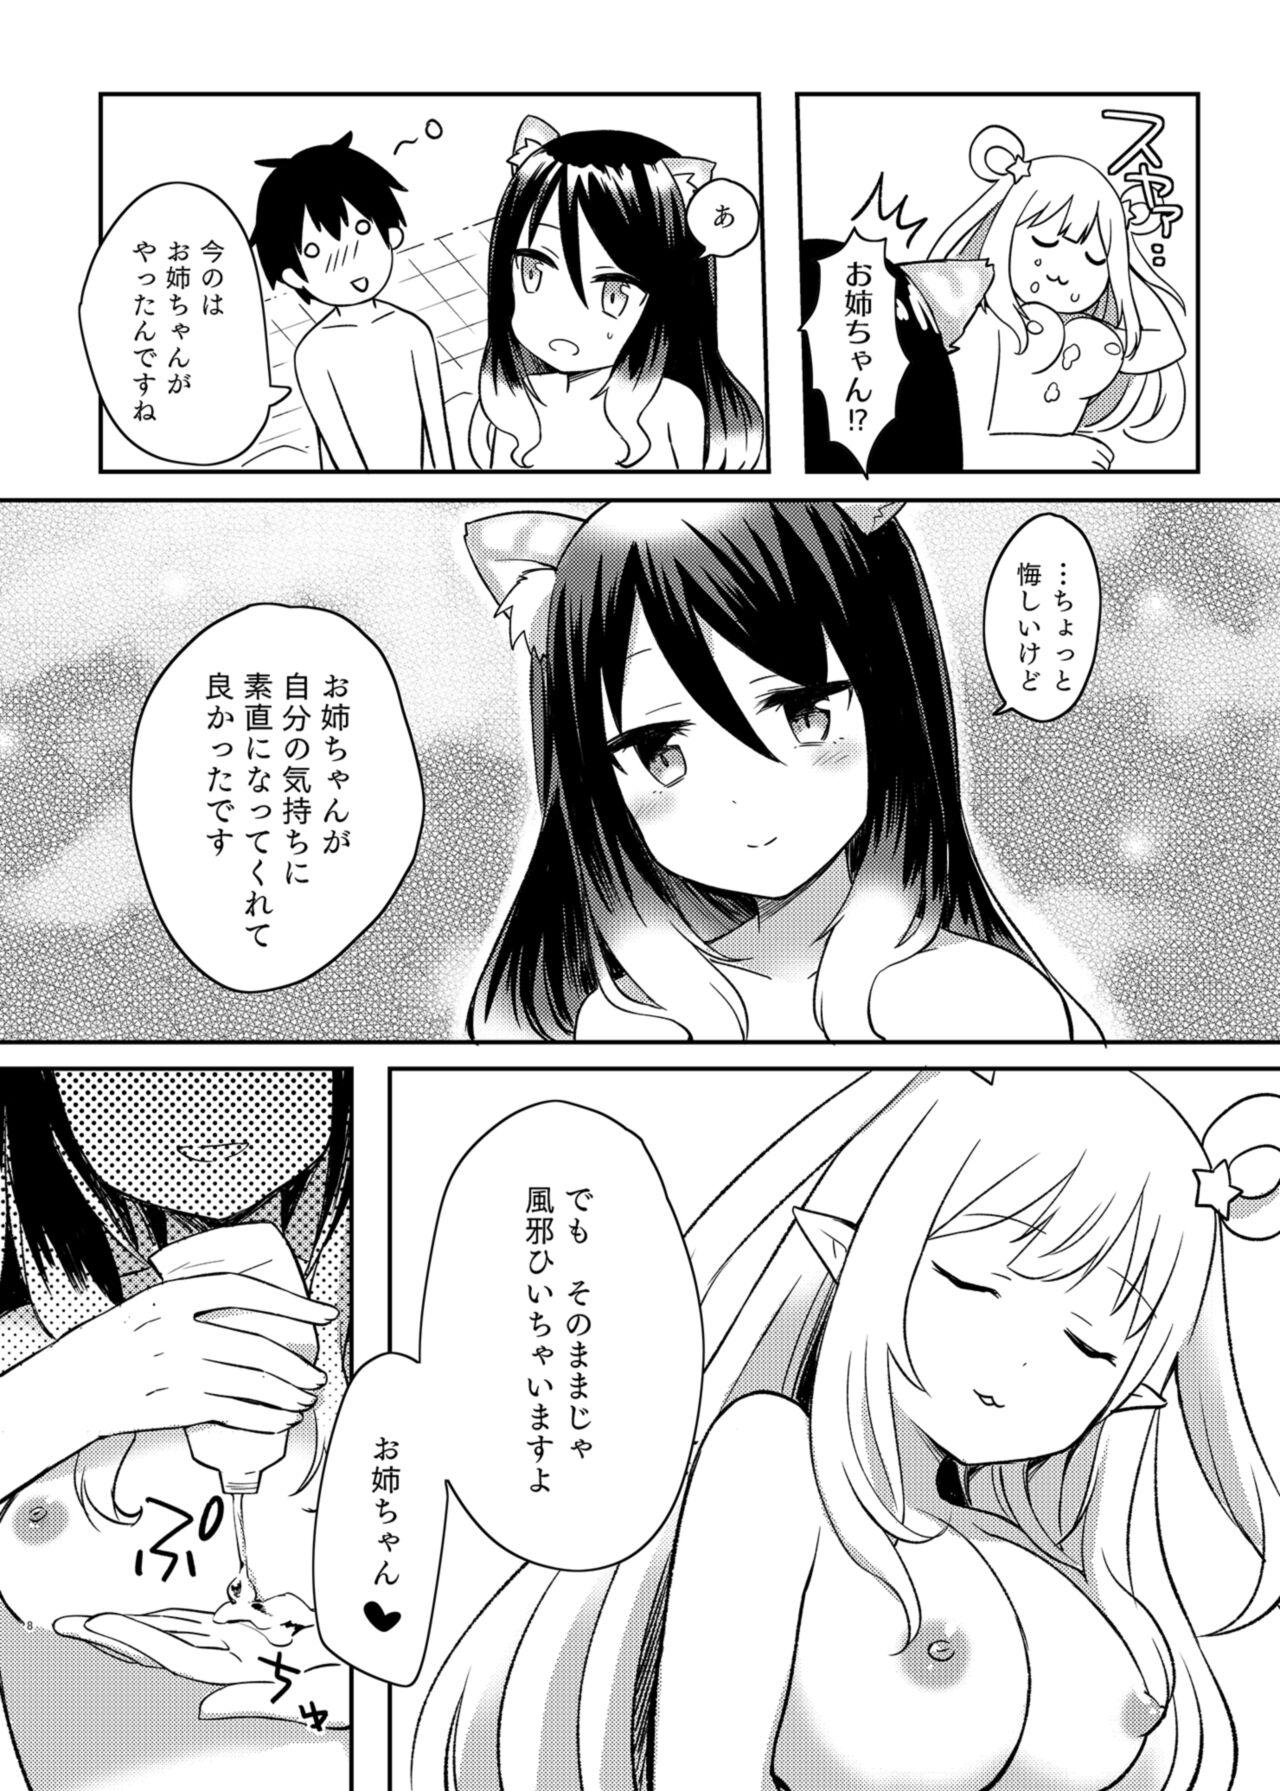 Fitness Hatsune to Shiori no Yukemuri Daisakusen - Princess connect Fingering - Page 8